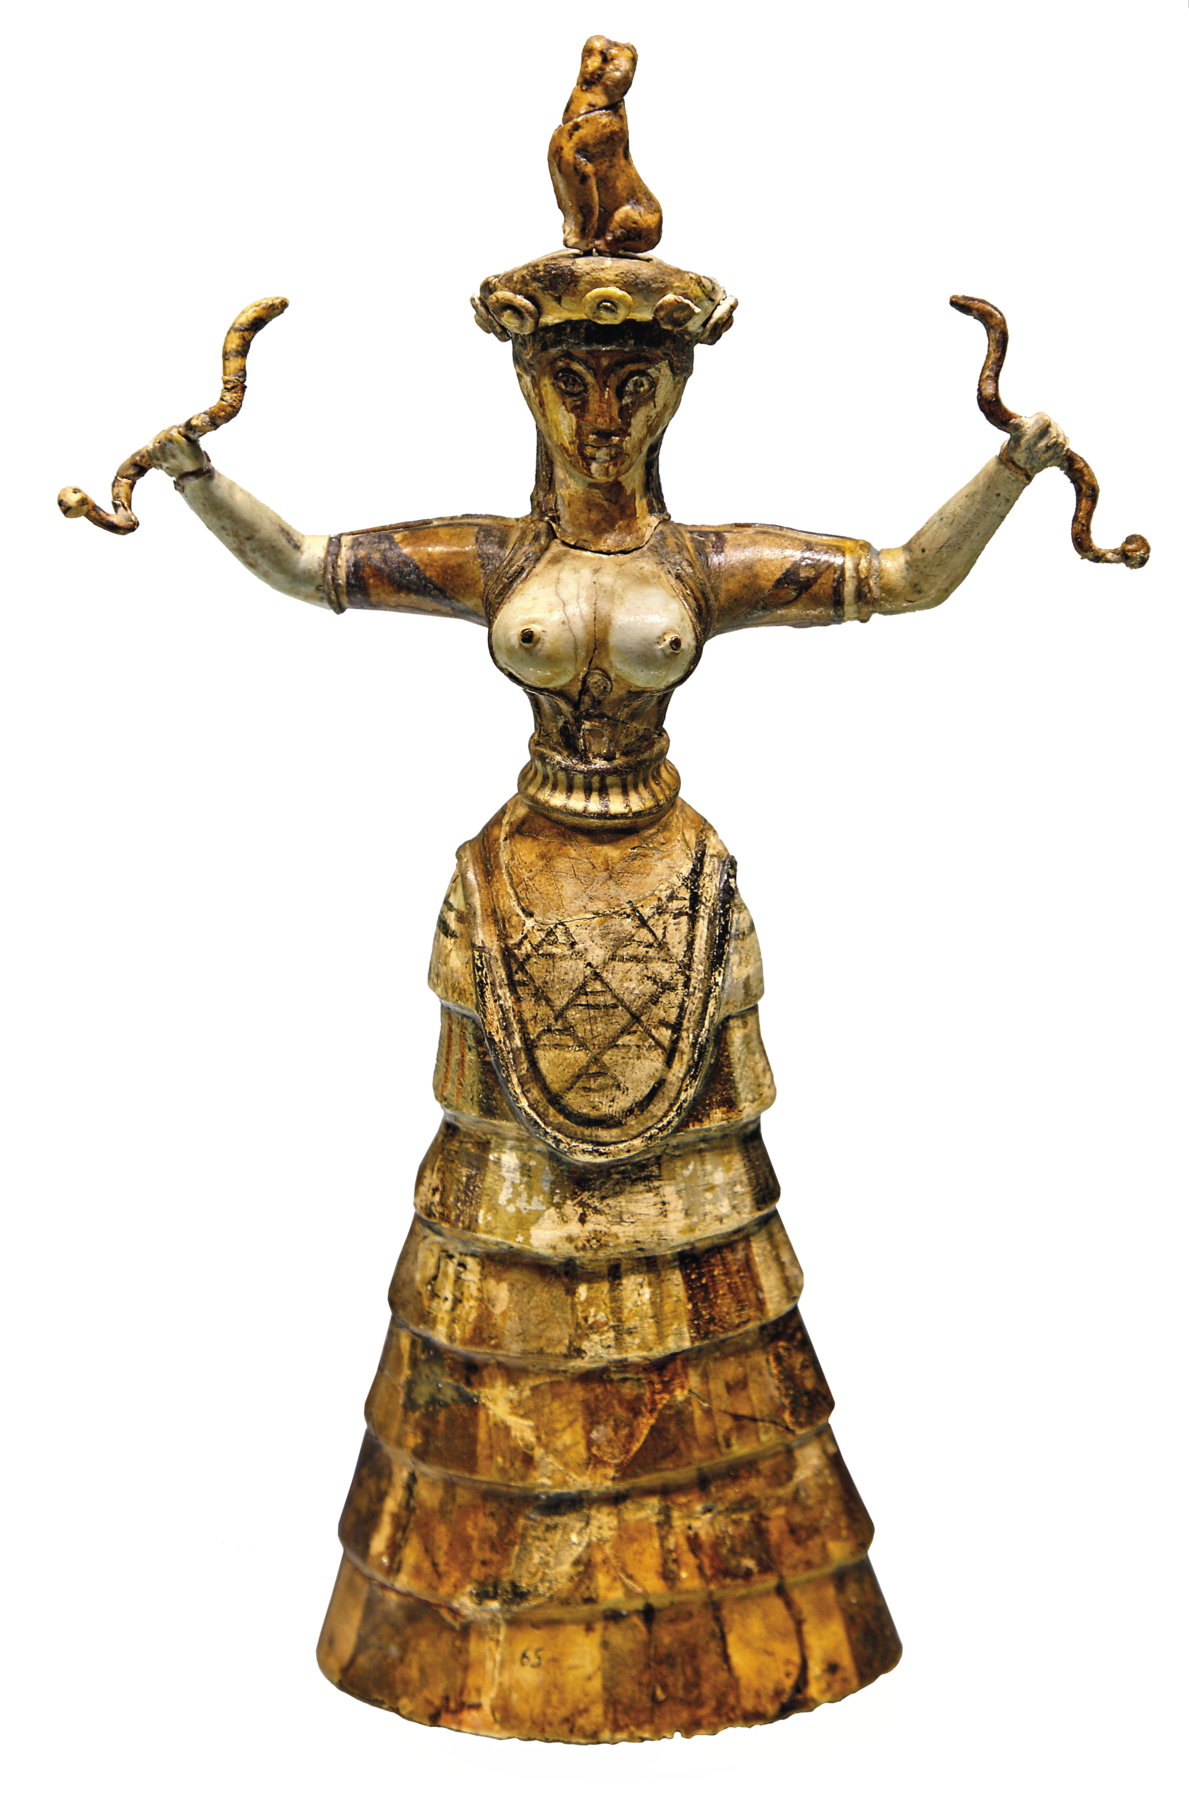 Escultura. Estatueta dourada de uma mulher. Ela está com os seios à mostra e veste uma longa saia rodada. Está com os braços esticados para os lados. Em cada uma das mãos ela segura uma serpente.